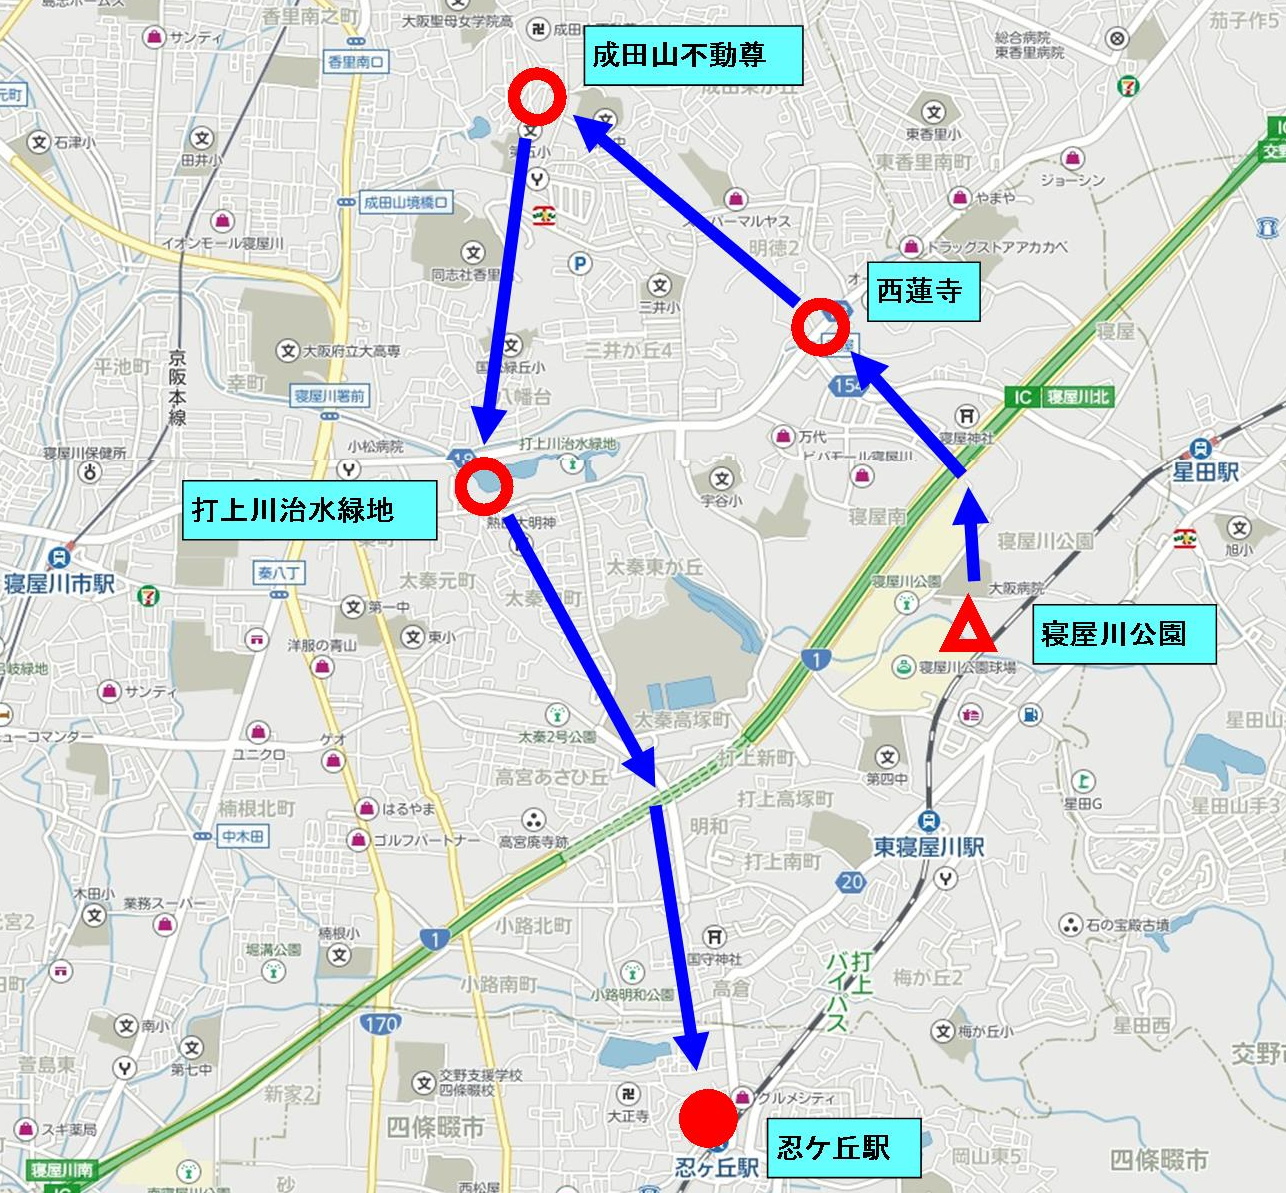 寝屋川地図 1 (2).JPG